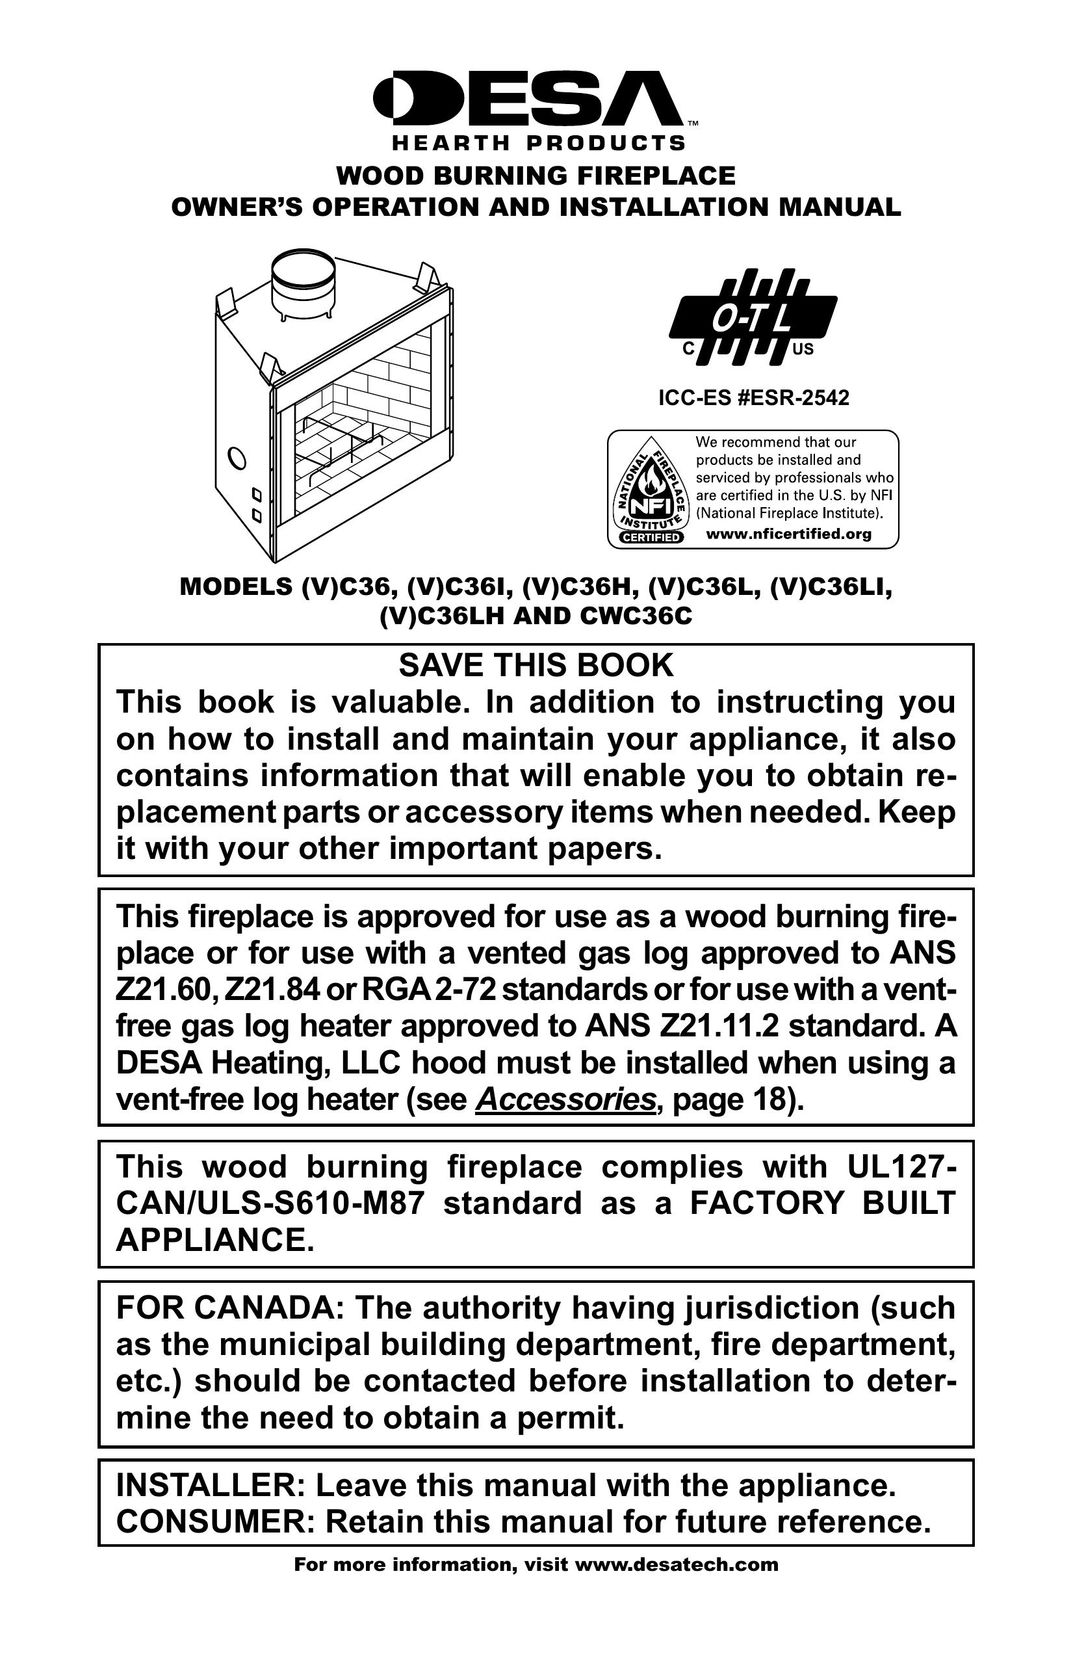 Desa (V)C36I Indoor Fireplace User Manual